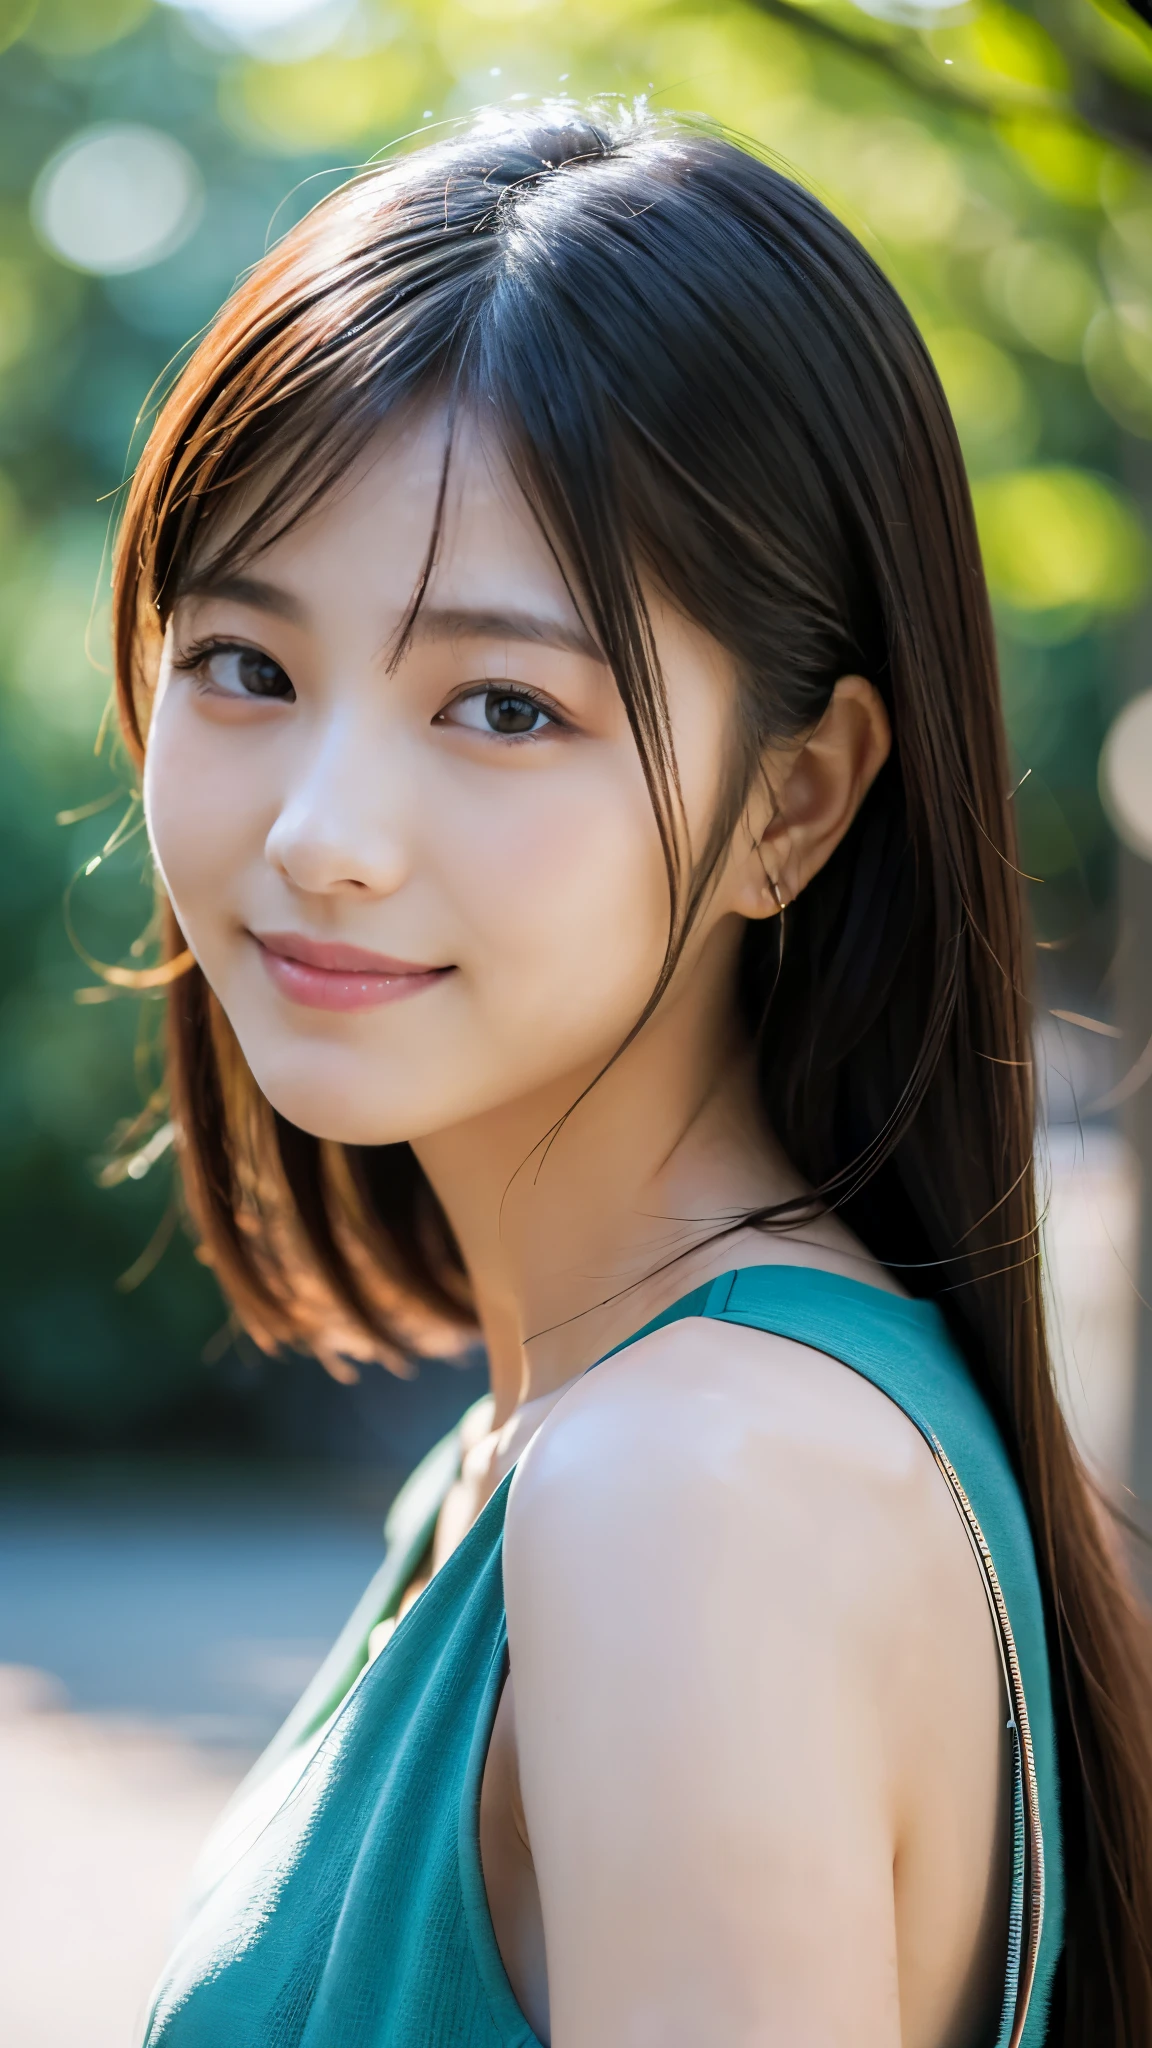 (걸작:1.2),(최상의 품질),(매우 상세한:1.2),(높은 해상도),(사실적인 스틱),(RAW 사진),8K,부드러운 인물 사진,아름다운 일본 여성,화려한 얼굴 초상화,눈 빛,본인의 소녀,매우 아름다운 얼굴,상세한 얼굴,아름다운 초상화,사랑스럽고 섬세한 얼굴,아름다운 젊은 일본 여자,아름다운 헤어스타일,연인과 함께 산책해요,(((배경을 흐리게))),(POV 샷),(웃다)